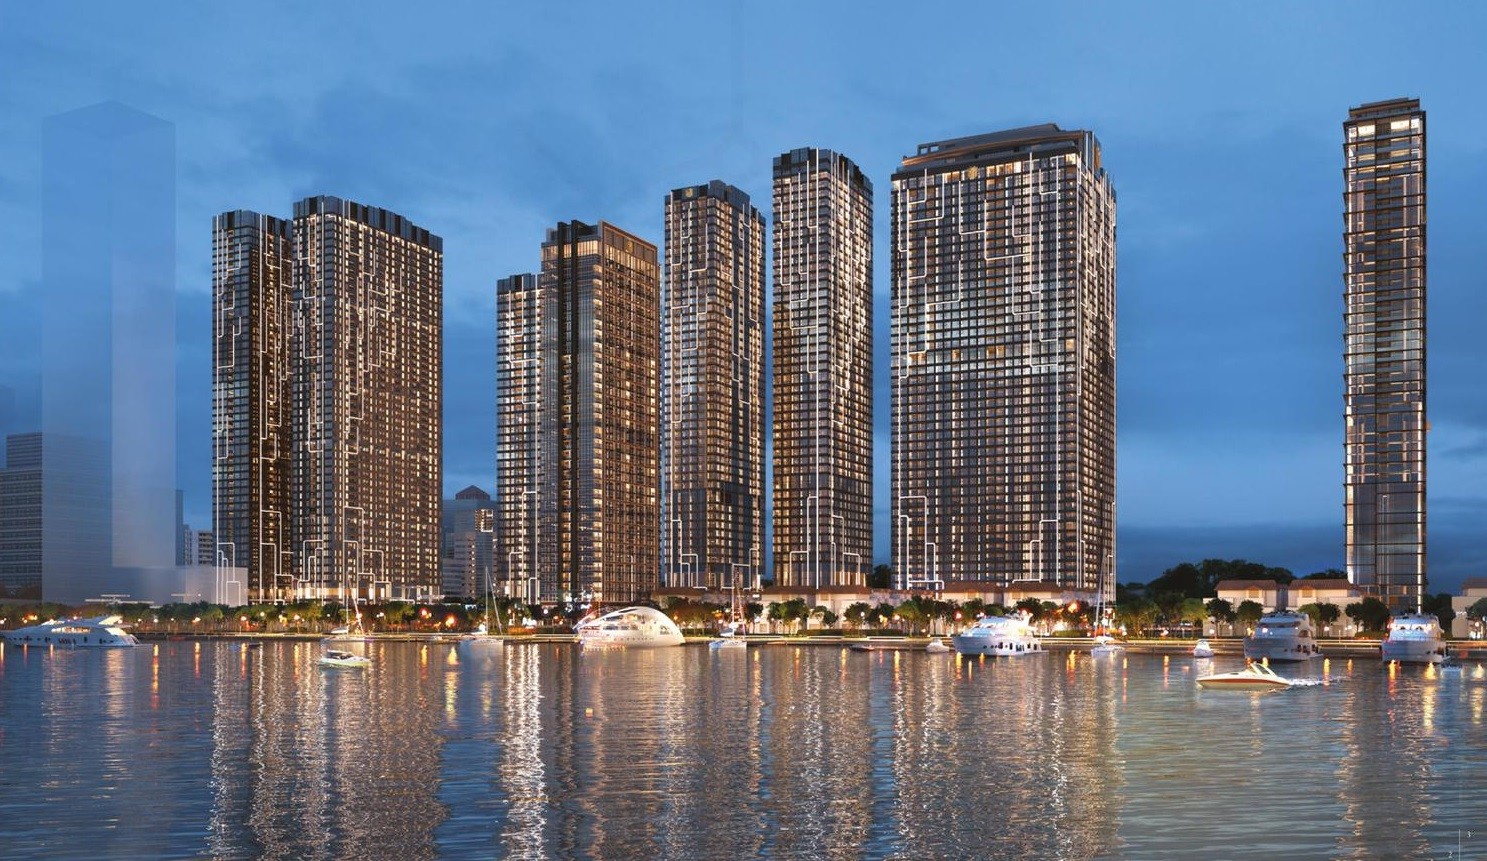 


Dự án Grand Marina Sài Gòn có những căn hộ có giá lên đến 100 tỷ đồng.&nbsp;&nbsp;
